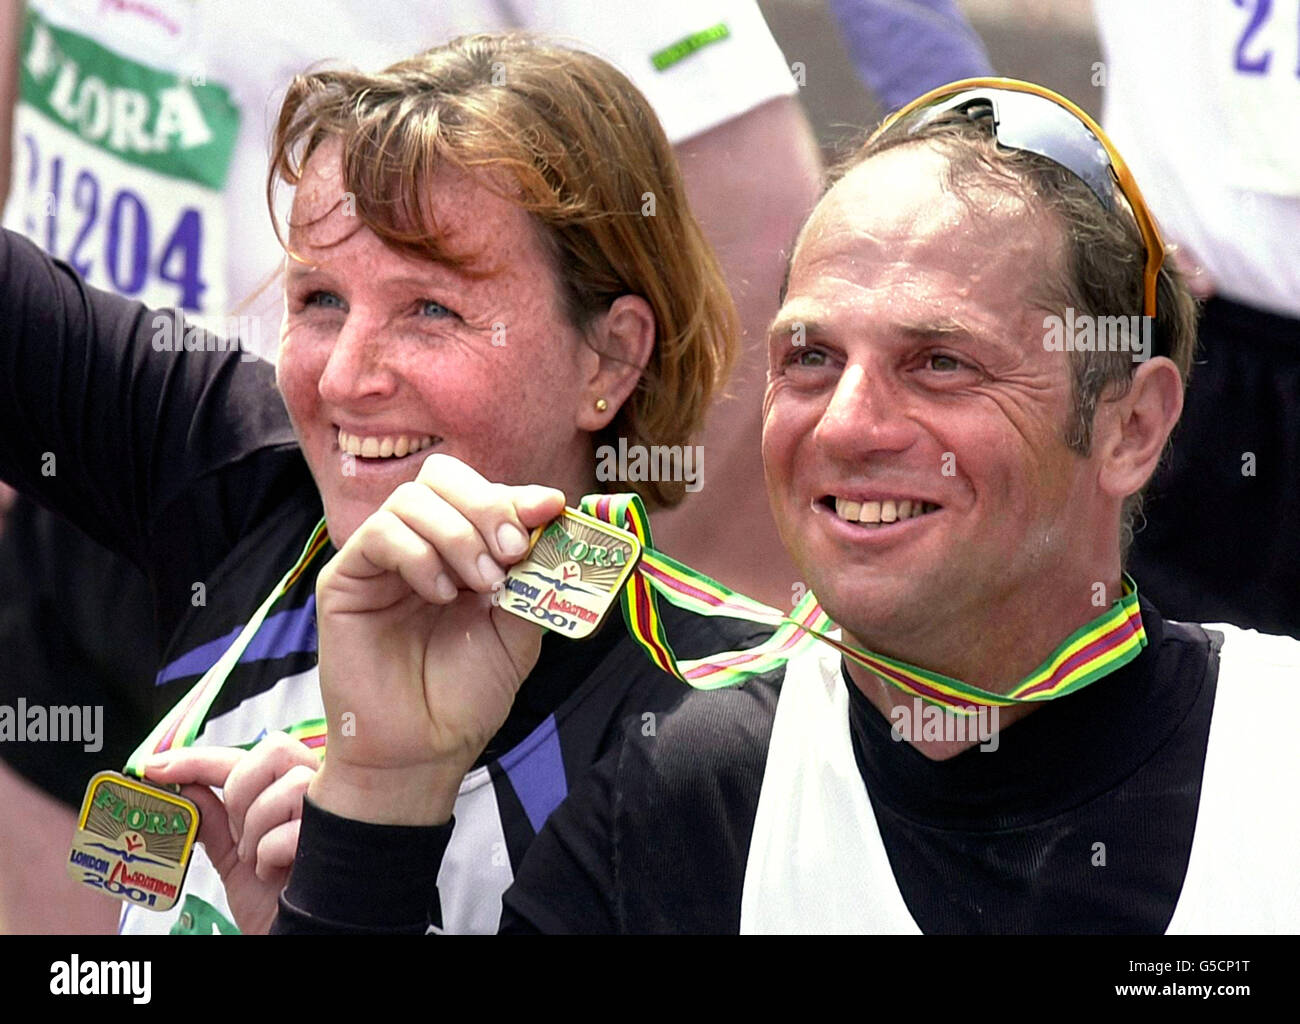 Il campione olimpico Sir Steven Redgrave con sua moglie Ann dopo che la coppia ha gareggiato nella maratona di Londra di quest'anno. 30,000 corridori tra cui l'ex campione di pugilato Frank Bruno, hanno iniziato l'odyssey 26 miglia in condizioni fredde. Foto Stock